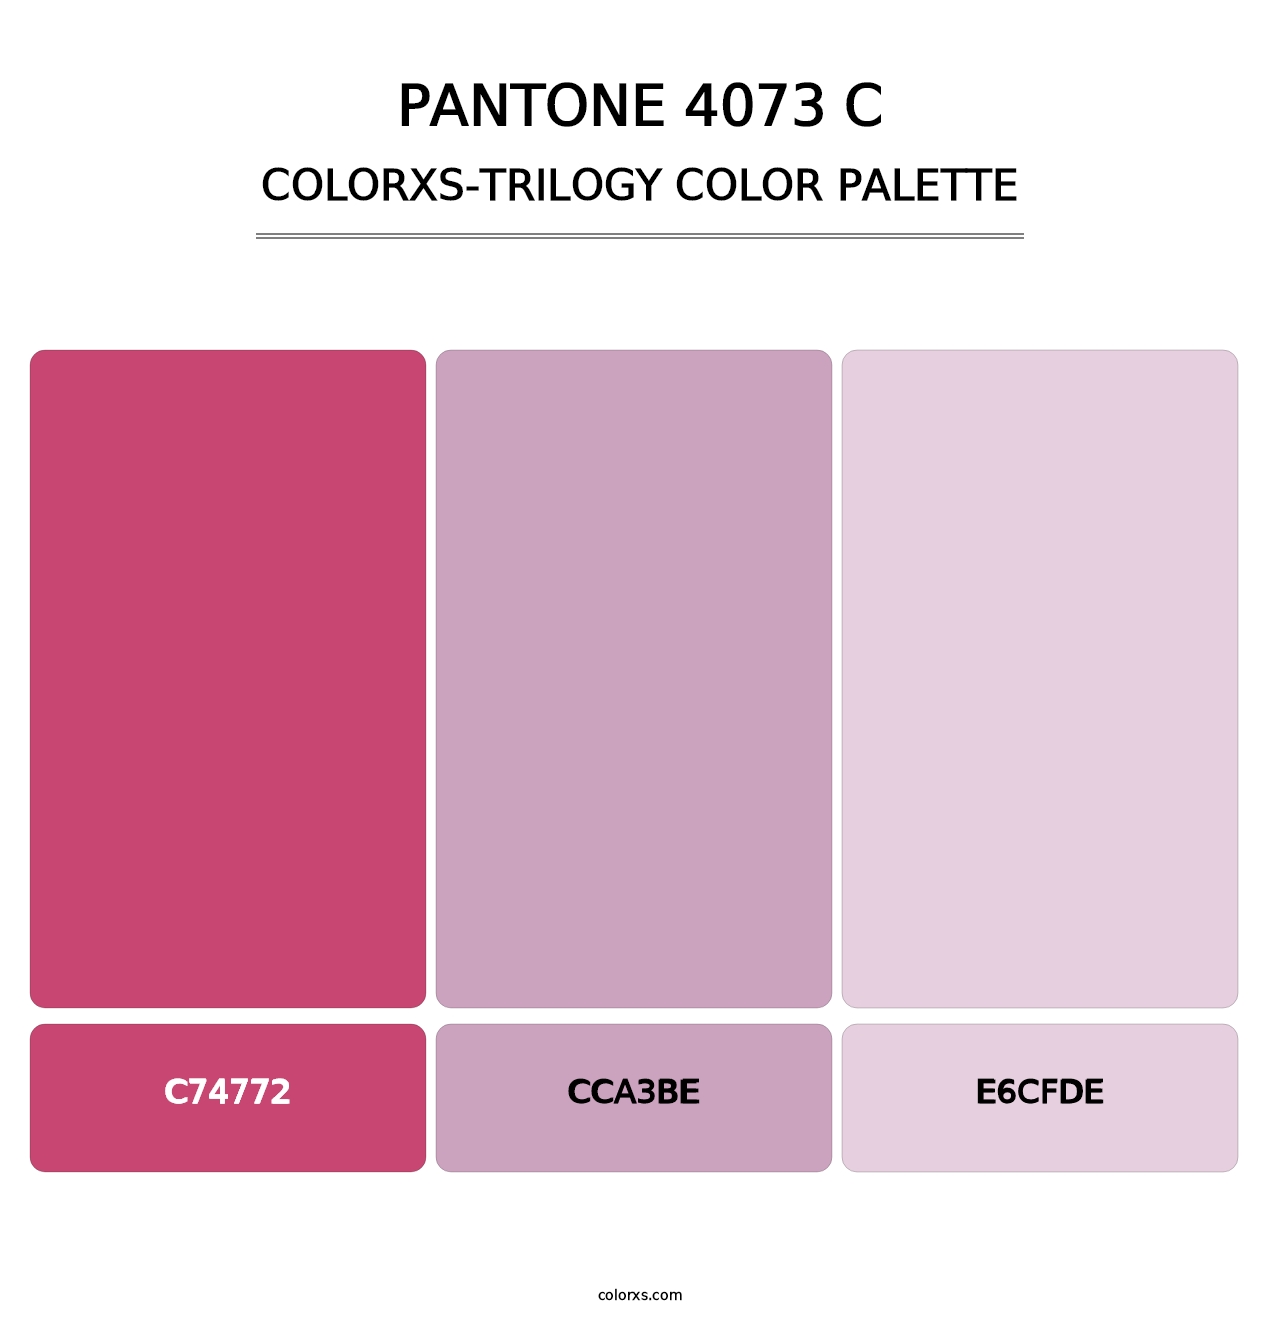 PANTONE 4073 C - Colorxs Trilogy Palette